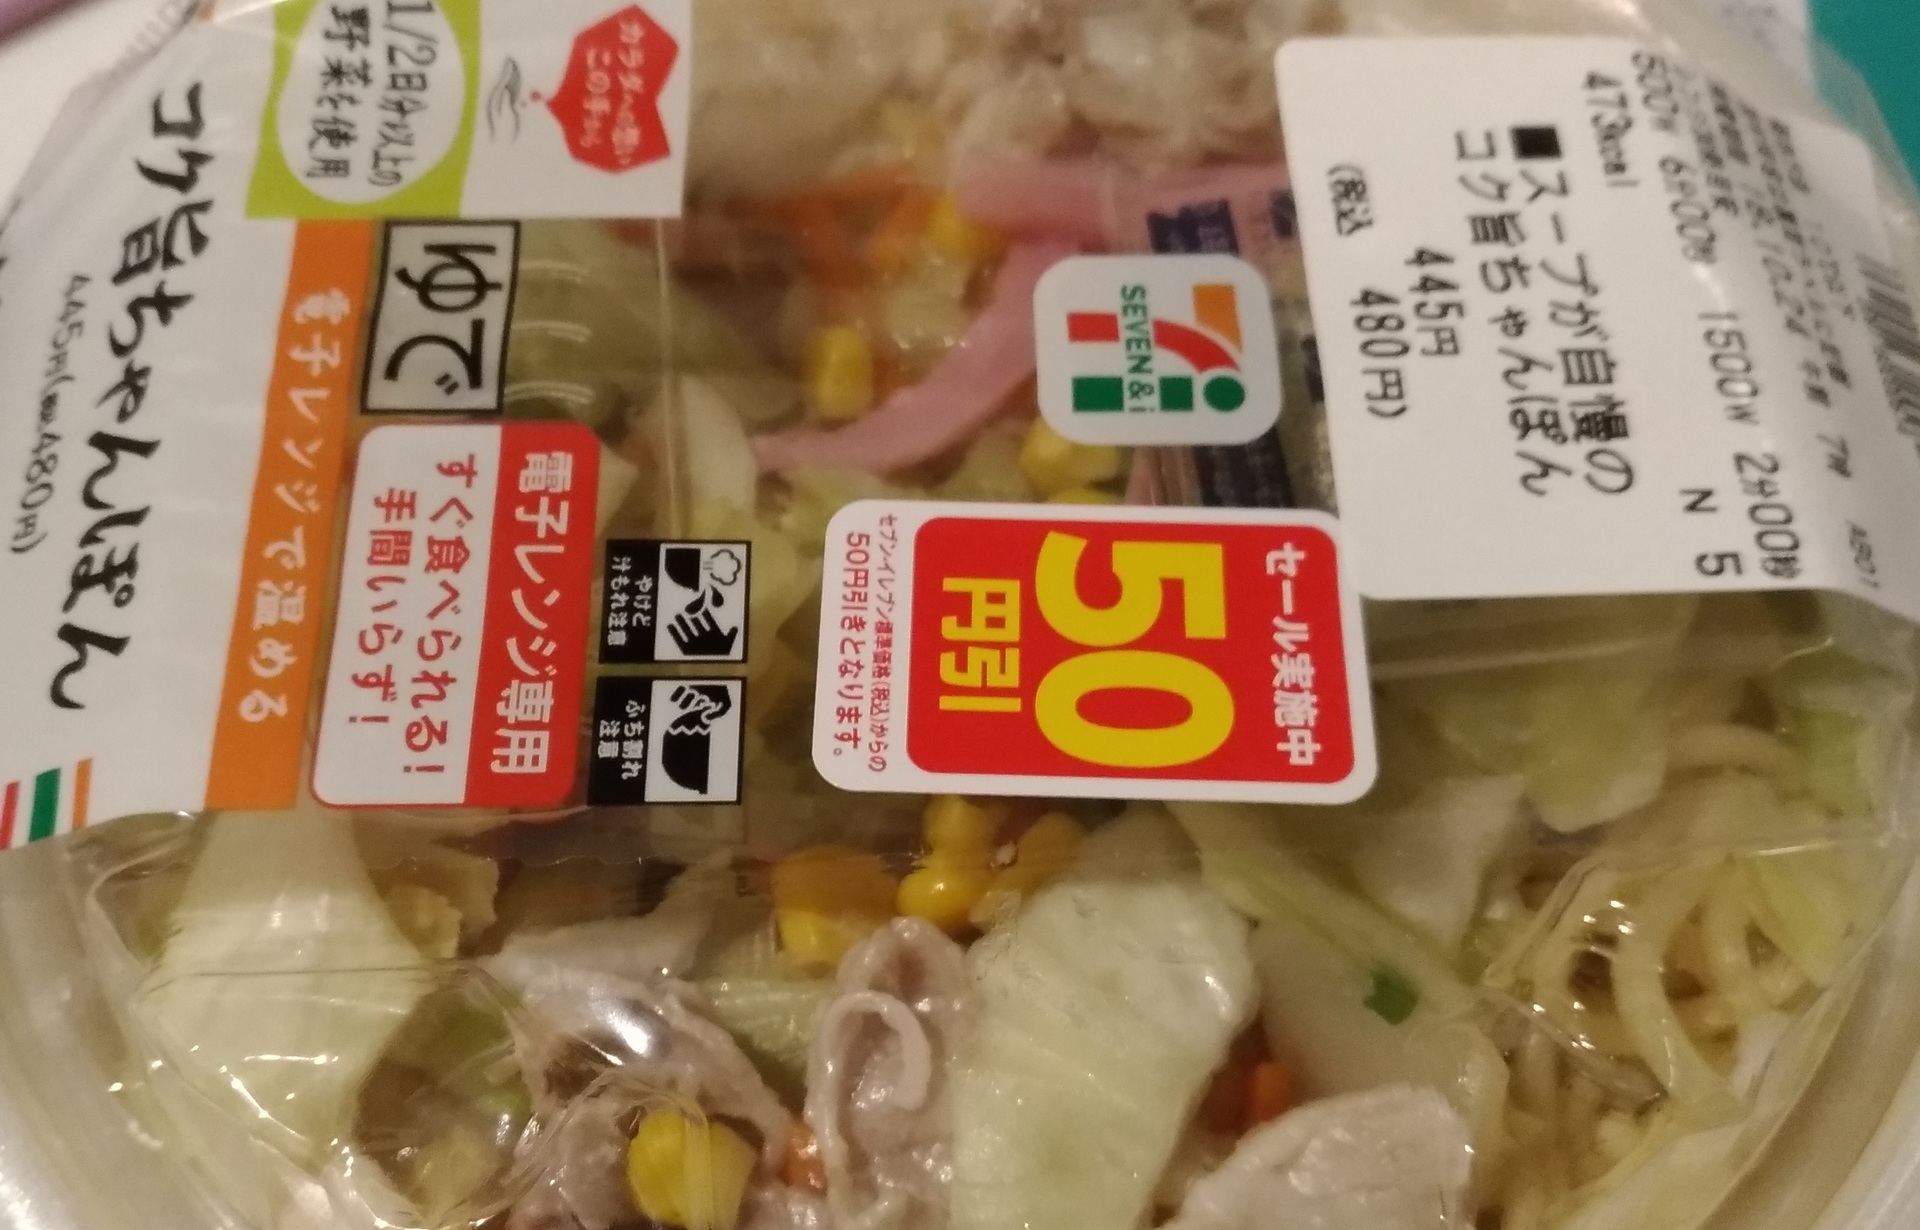 セブンイレブン 50円引きコク旨ちゃんぽん1 2分以上の野菜を セブンイレブン人気おすすめ おにぎりお惣菜新作種類ブログで